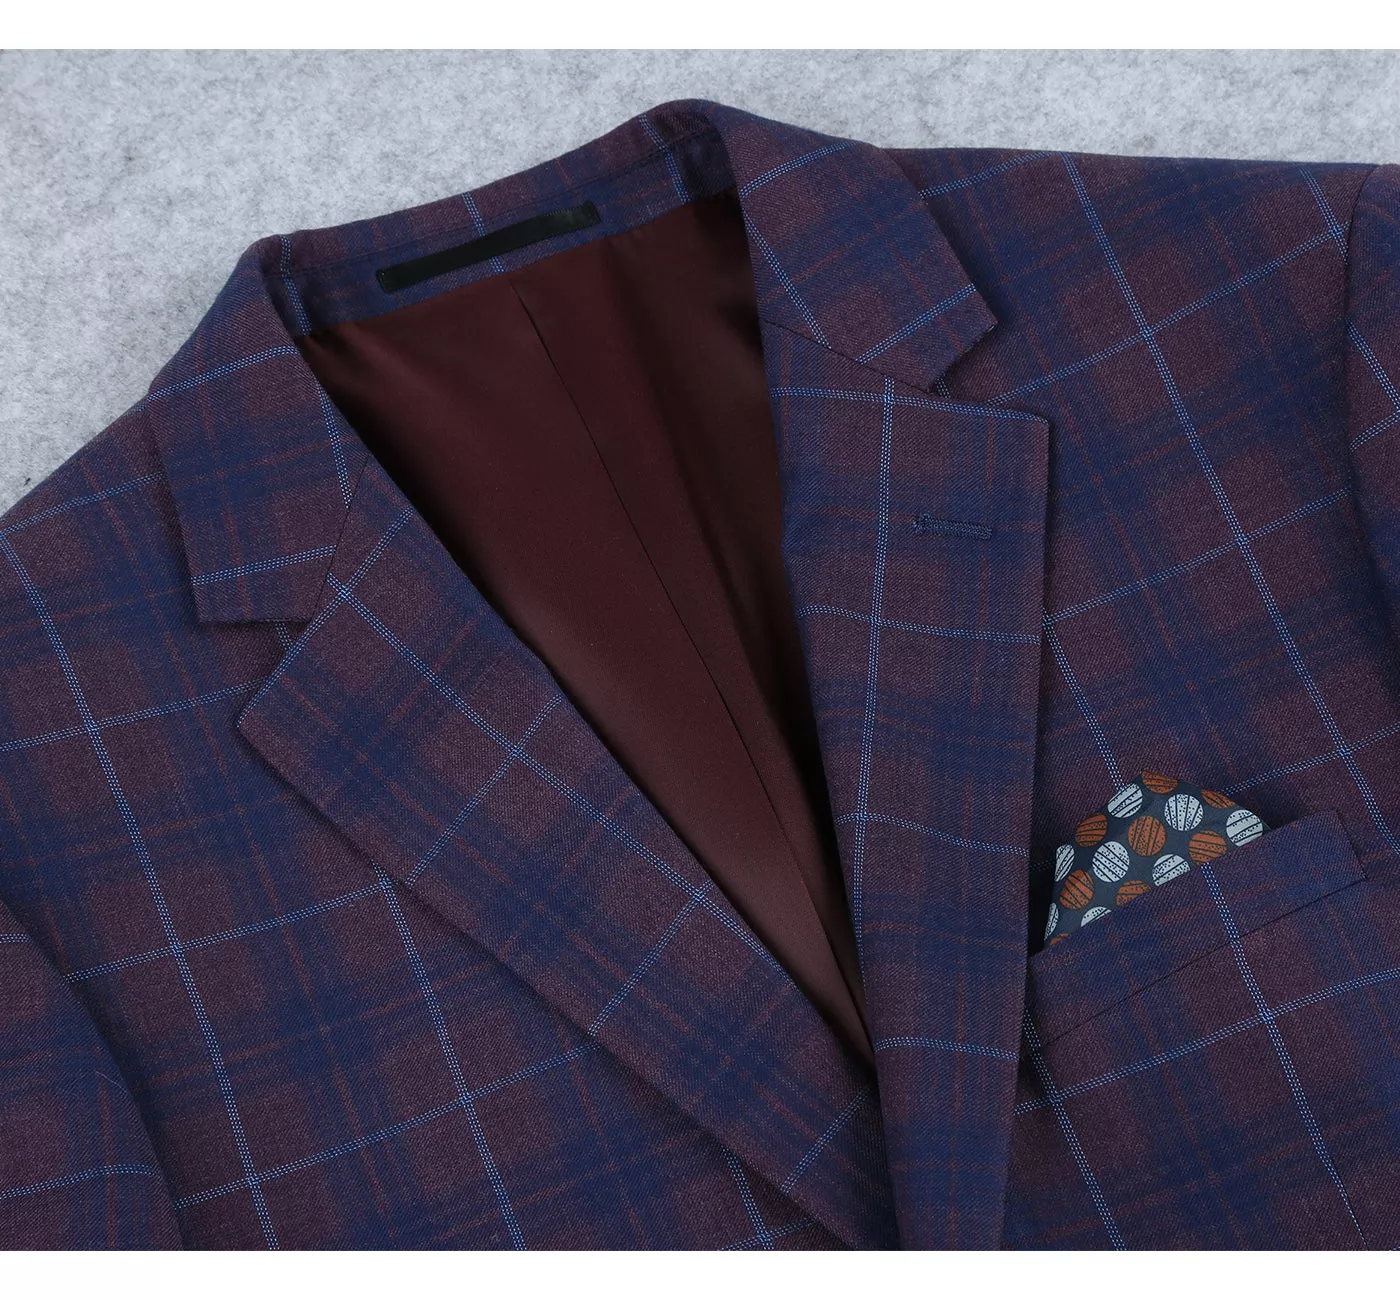 Men's 2 Buttons Slim Fit Blazer Premium Plaid Sport Coat